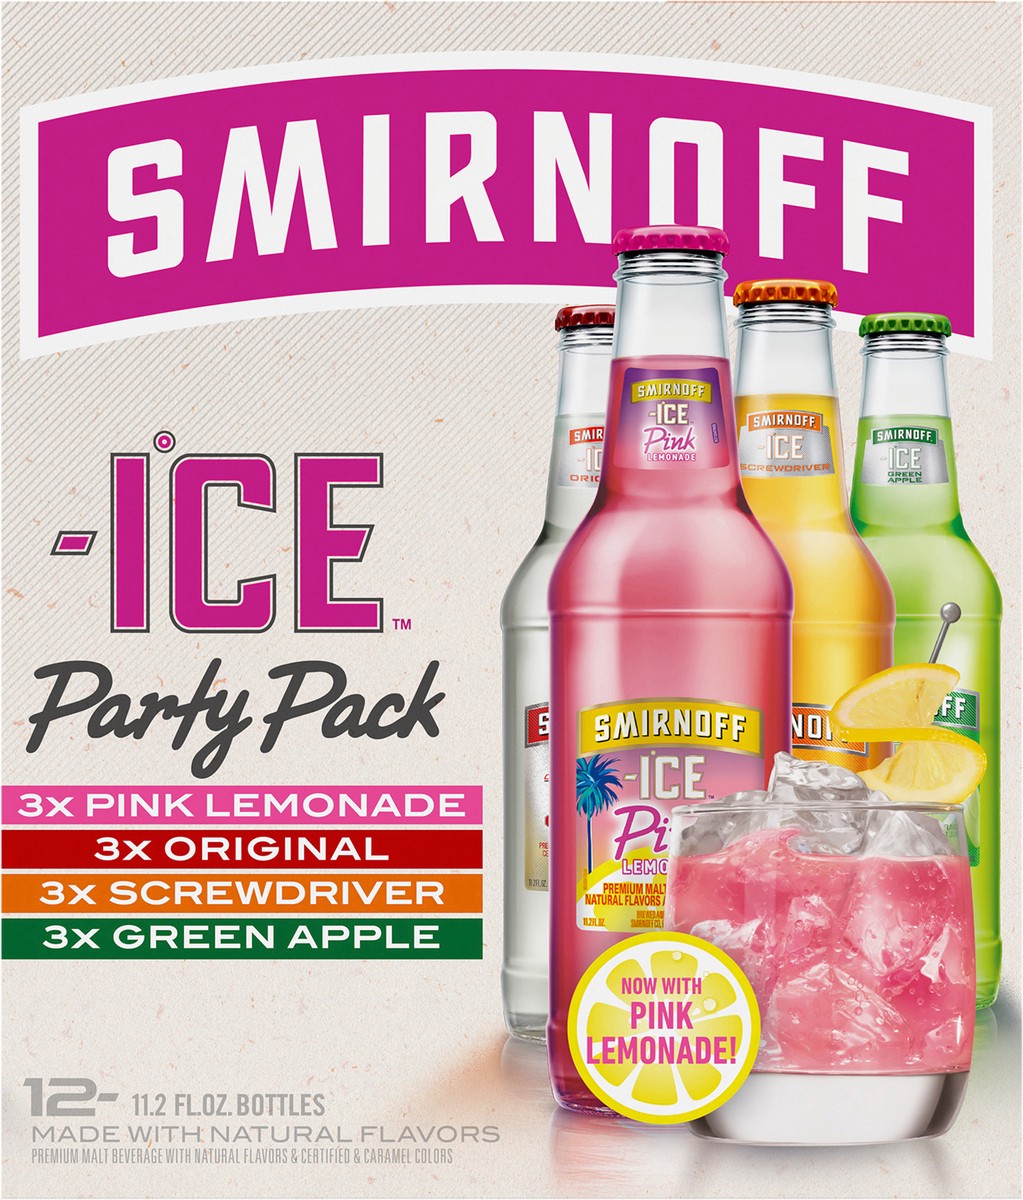 slide 8 of 9, Smirnoff Ice Sparkling Drink Party Pack, 11.2oz Bottles, 12pk, 134.4 fl oz